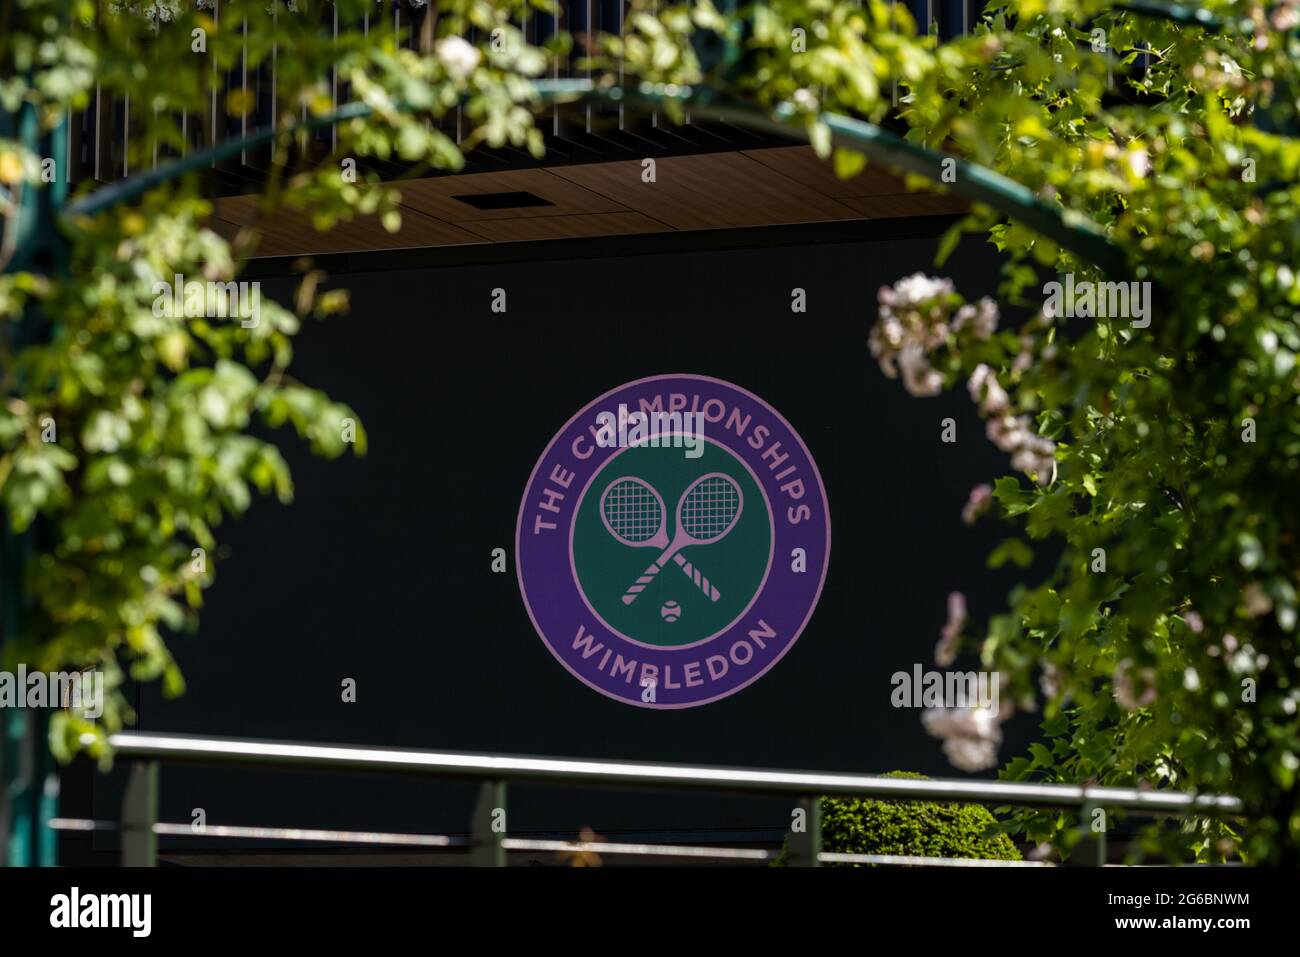 Vista generale dei campi prima del settimo giorno di Wimbledon presso l'All England Lawn Tennis and Croquet Club, Wimbledon. Data immagine: Lunedì 5 luglio 2021. Foto Stock